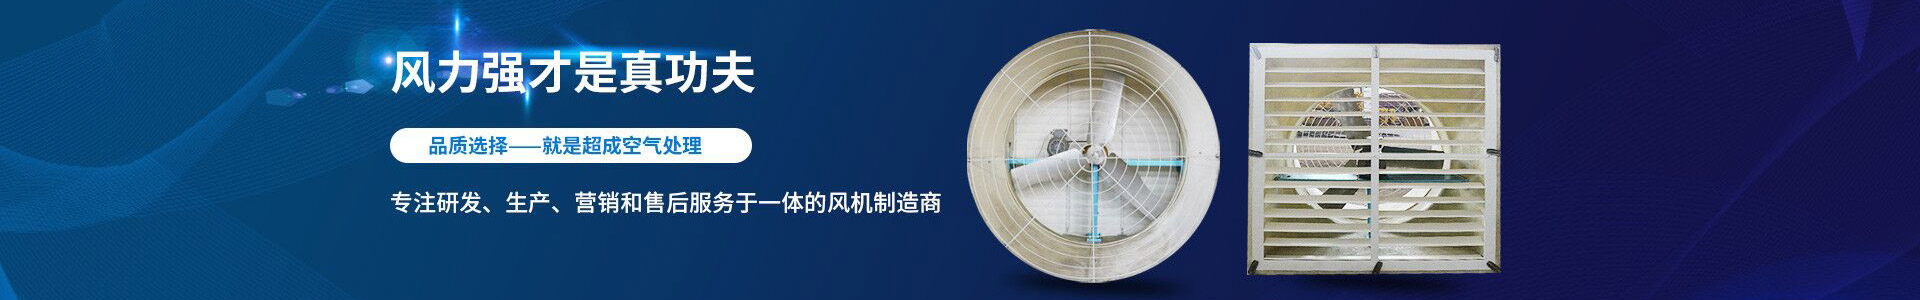 胶水搅拌机-江阴市超成空气处理设备有限公司